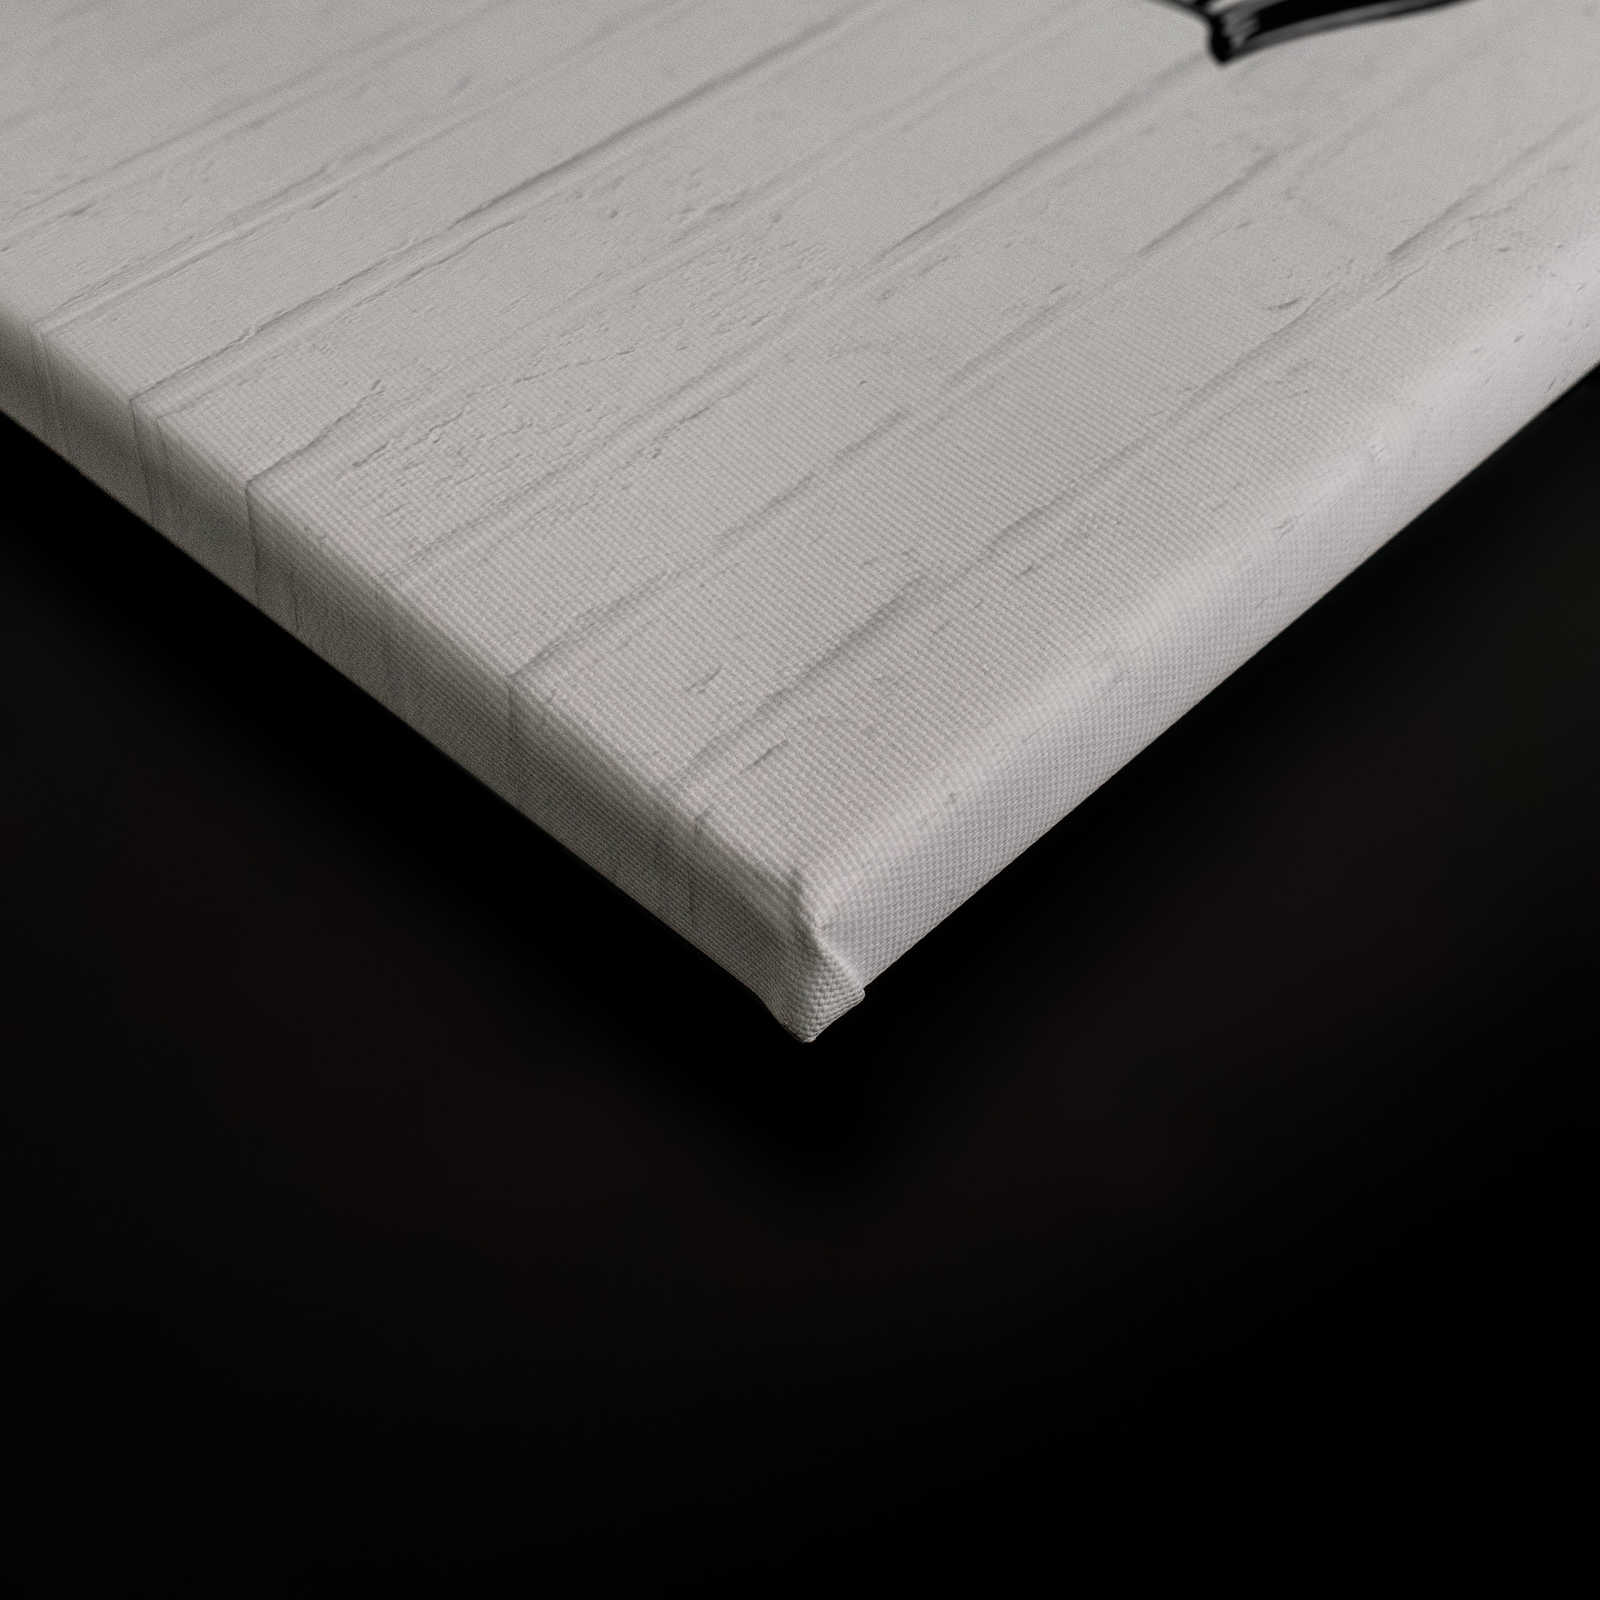             Schwarz-Weißes Leinwandbild Steinwand mit Grafik Muster – 0,90 m x 0,60 m
        